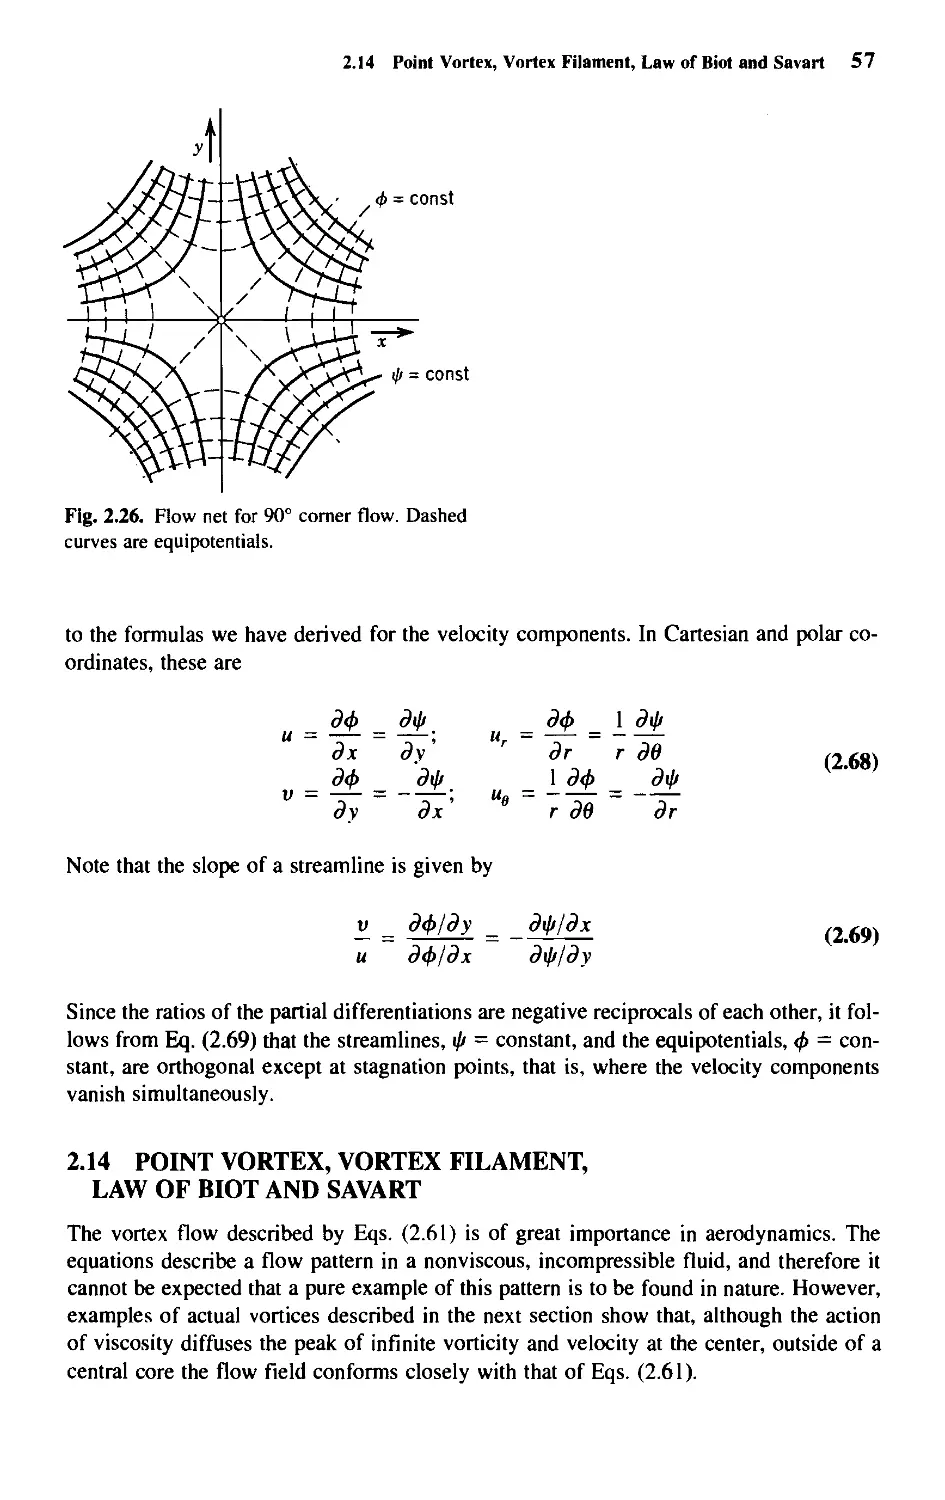 2.14 - Point Vortex, Vortex Filament, Law of Biot and Savart